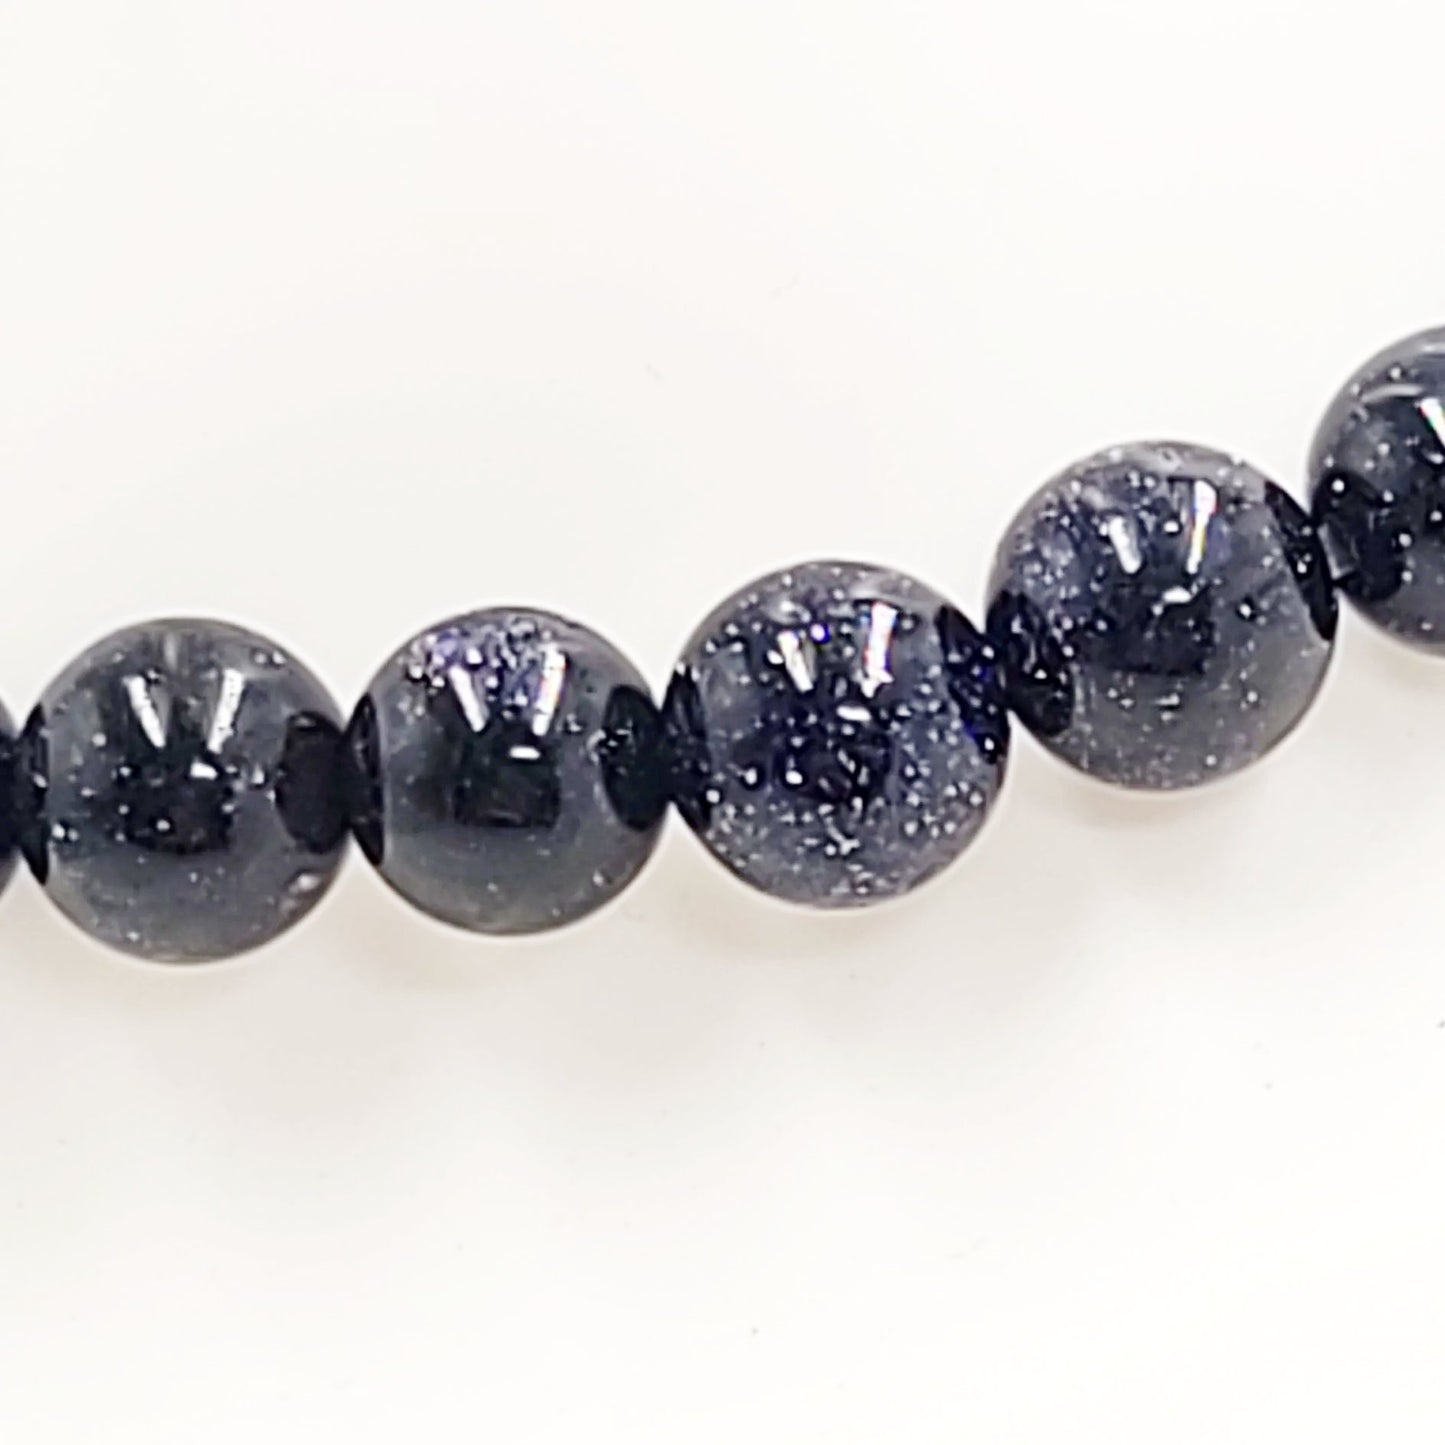 Blue Goldstone Bead Bracelet 8mm Blue Sandstone - Elevated Metaphysical